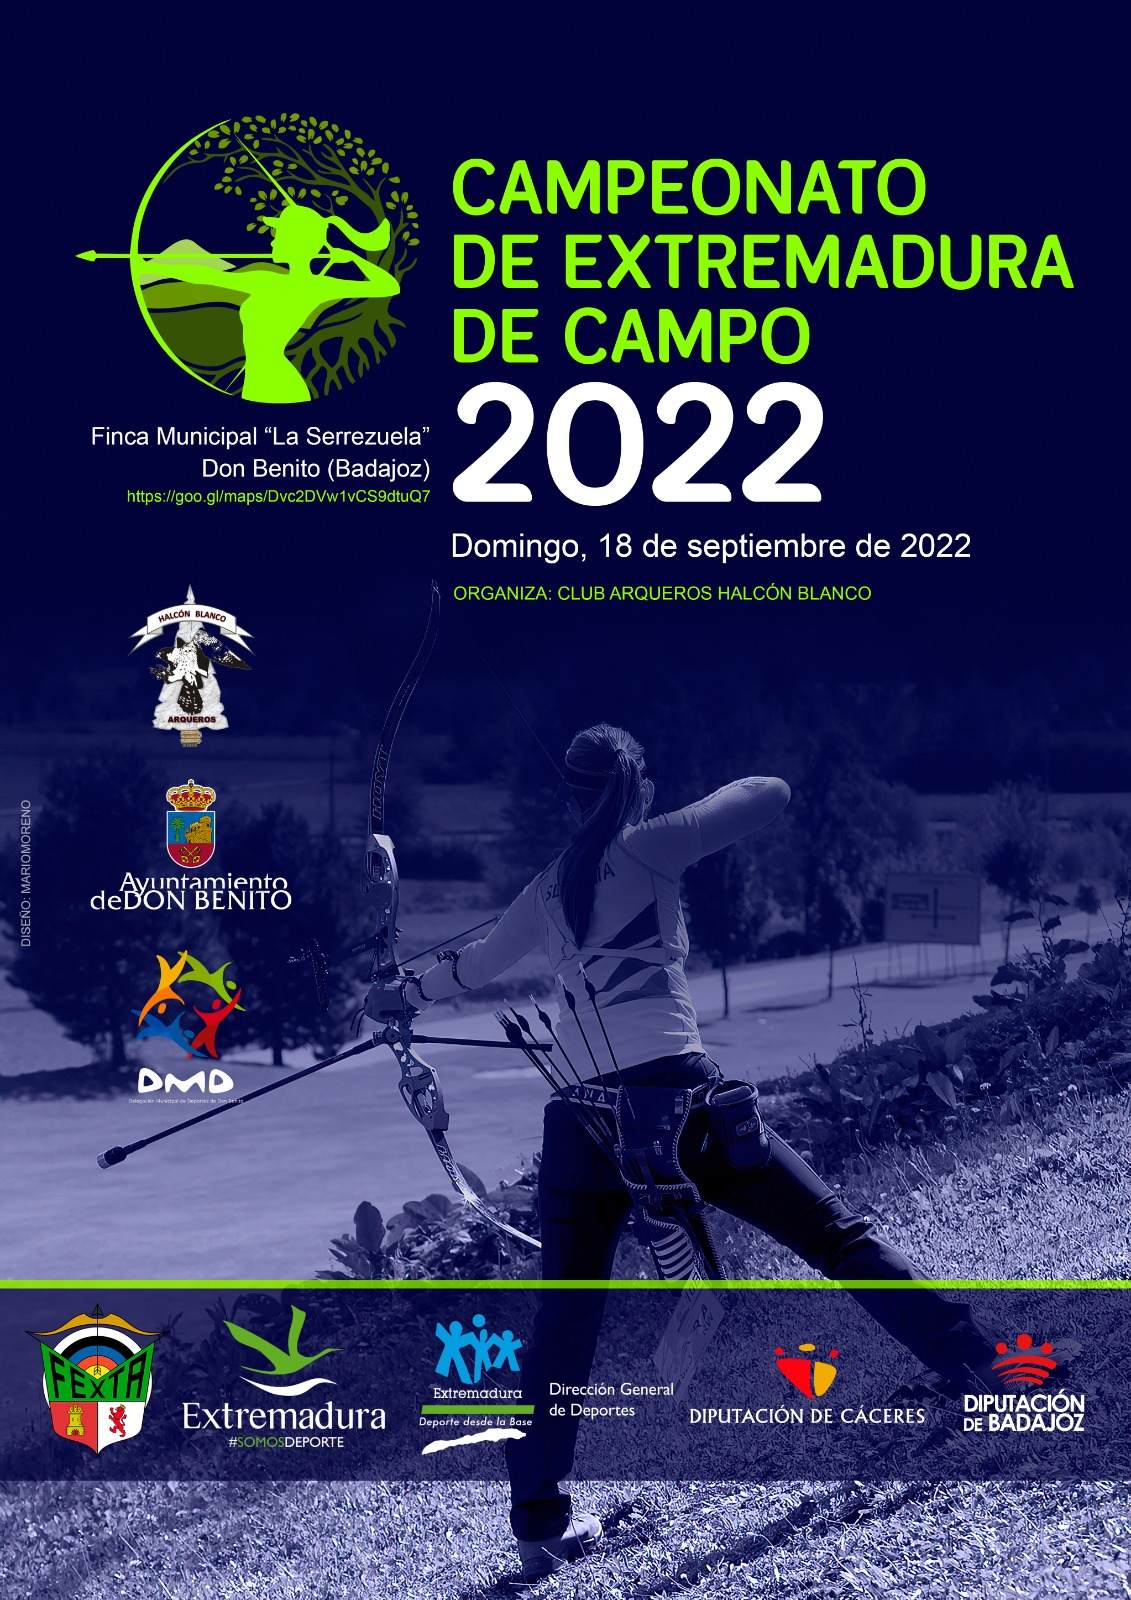 CAMPEONATO DE EXTREMADURA DE CAMPO 2022 - Inscríbete